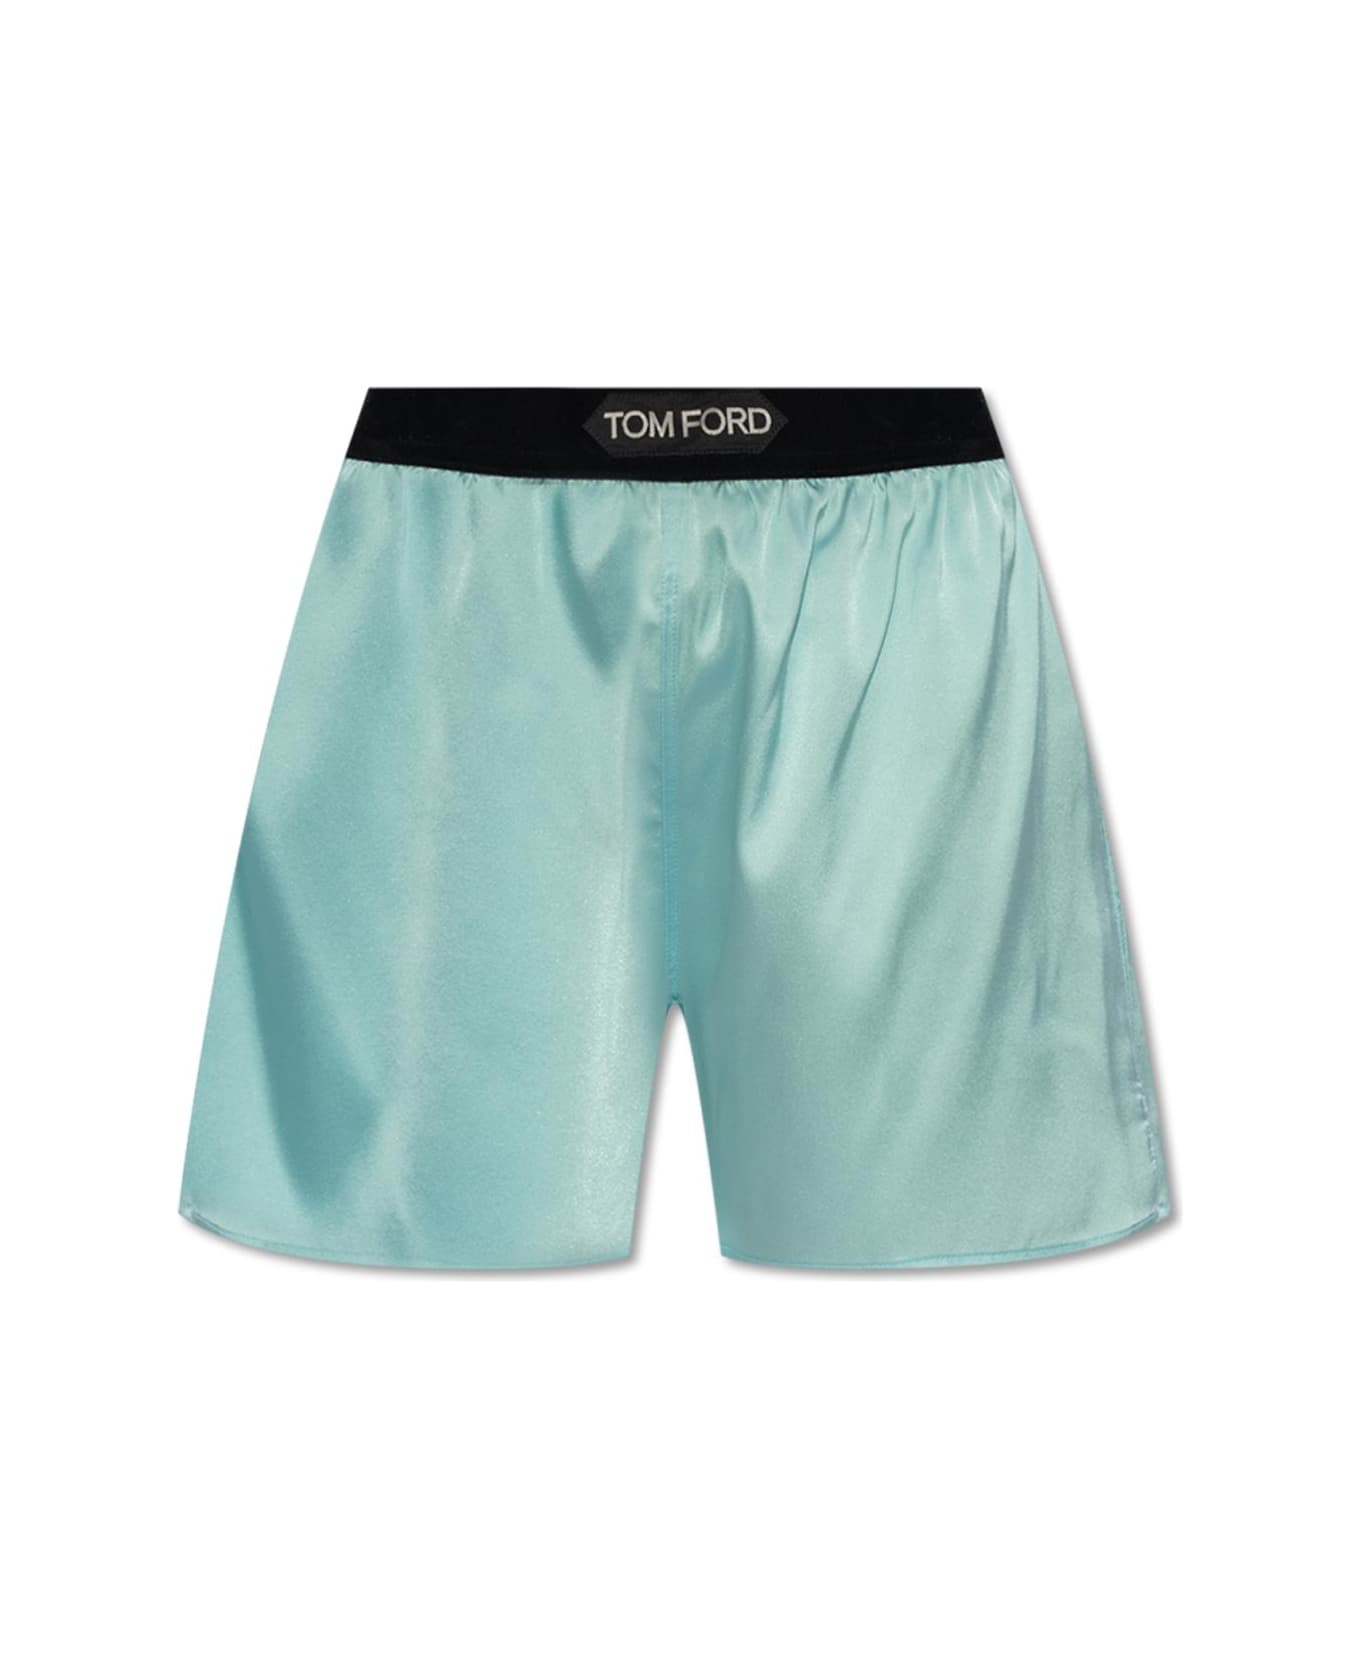 Tom Ford Silk Underwear Shorts - BLUE